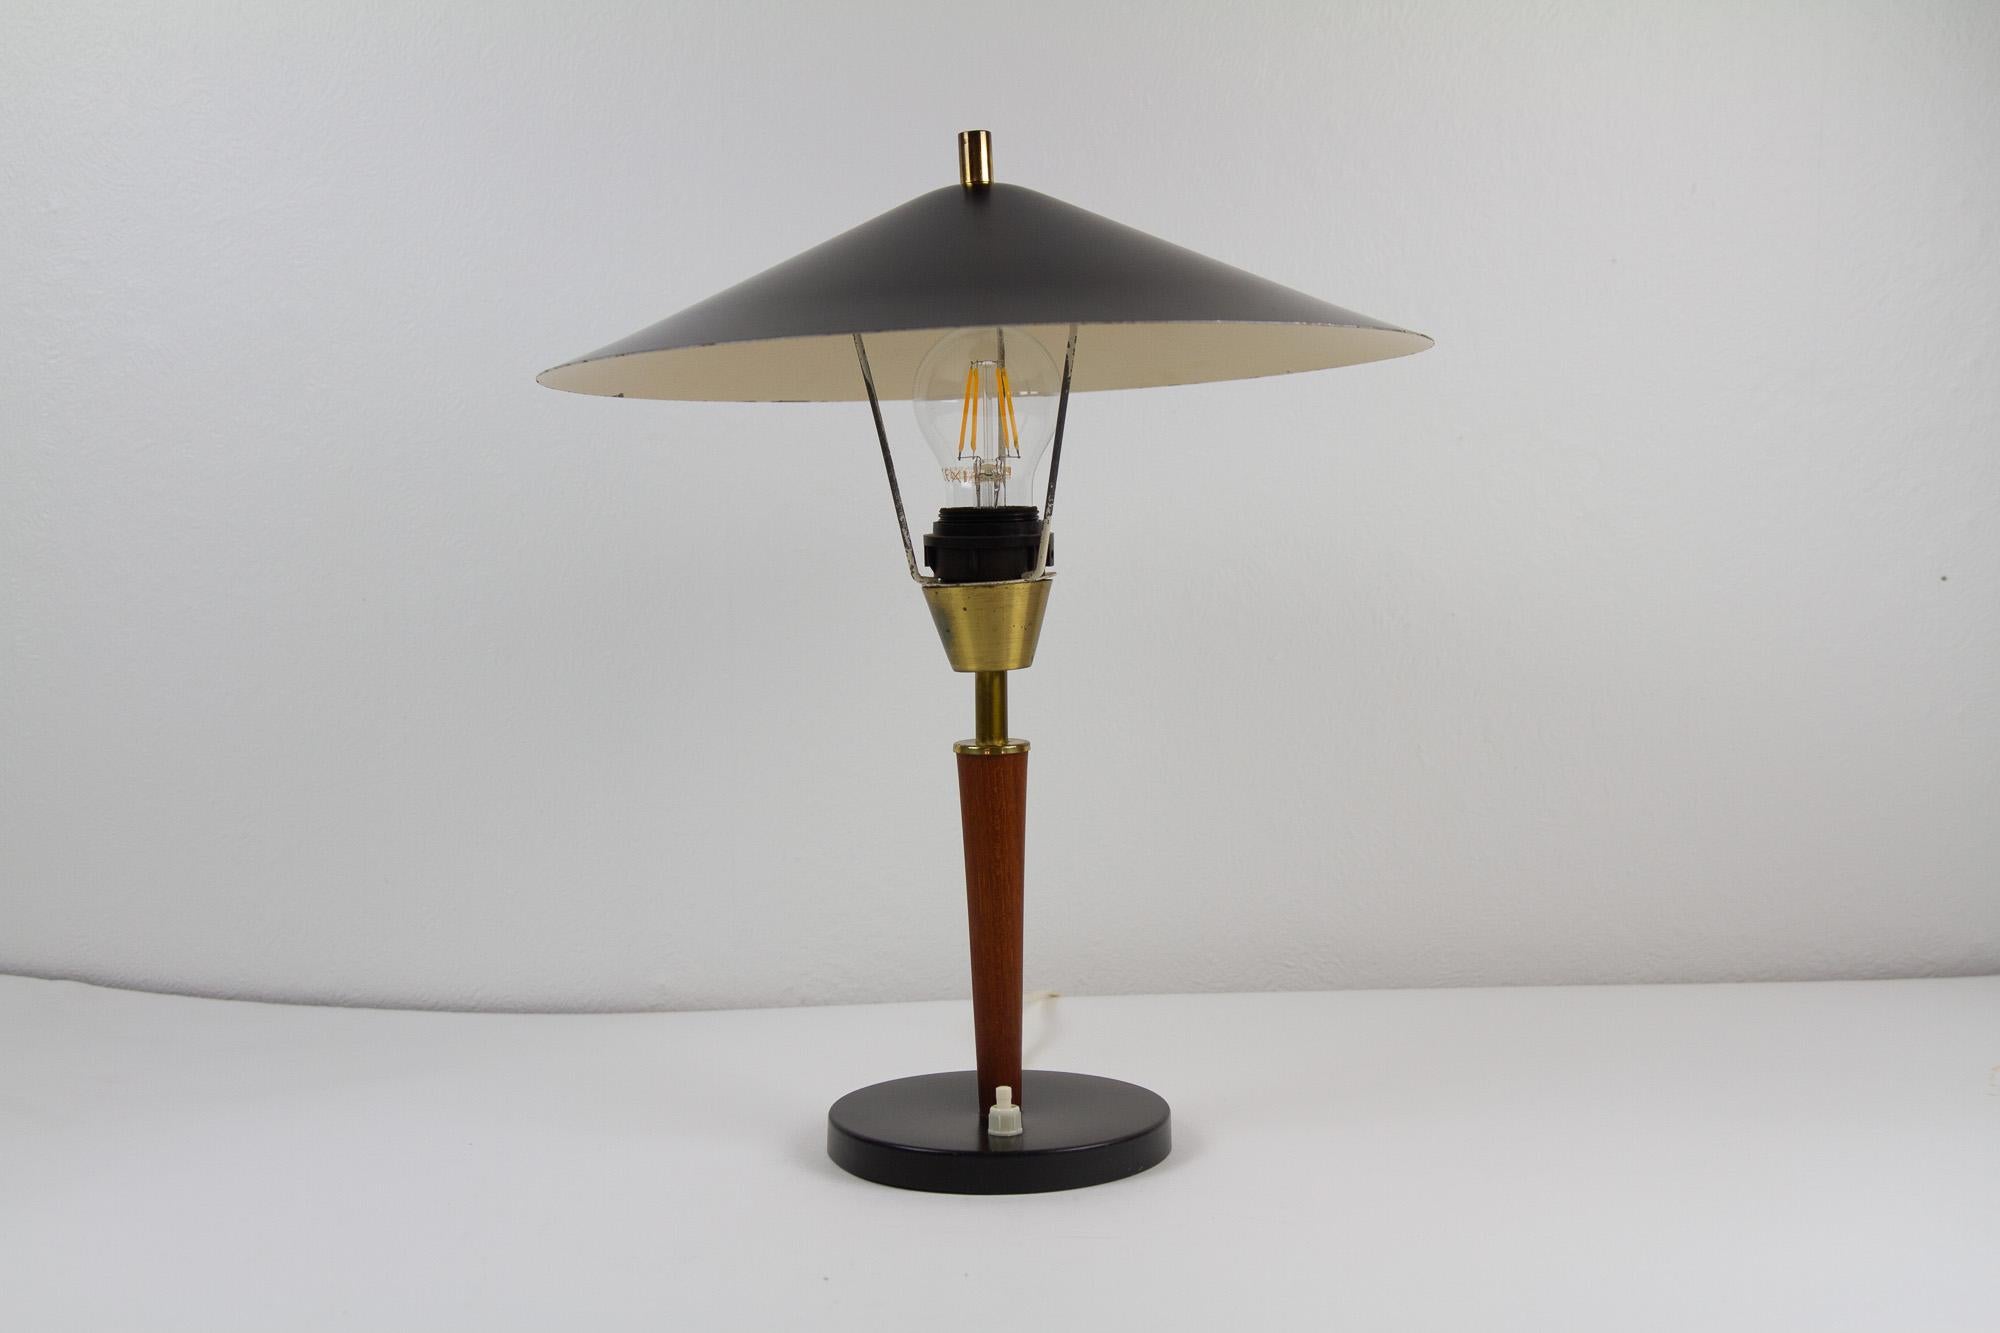 Vintage Danish Teak Desk Lamp, 1960s.
Lampe de table moderne danoise avec des détails en laiton. Base noire et abat-jour circulaire noir en métal. Tige en teck massif. Swith à la base. Convient parfaitement comme lampe de bureau.
Prise E26/27.
Très